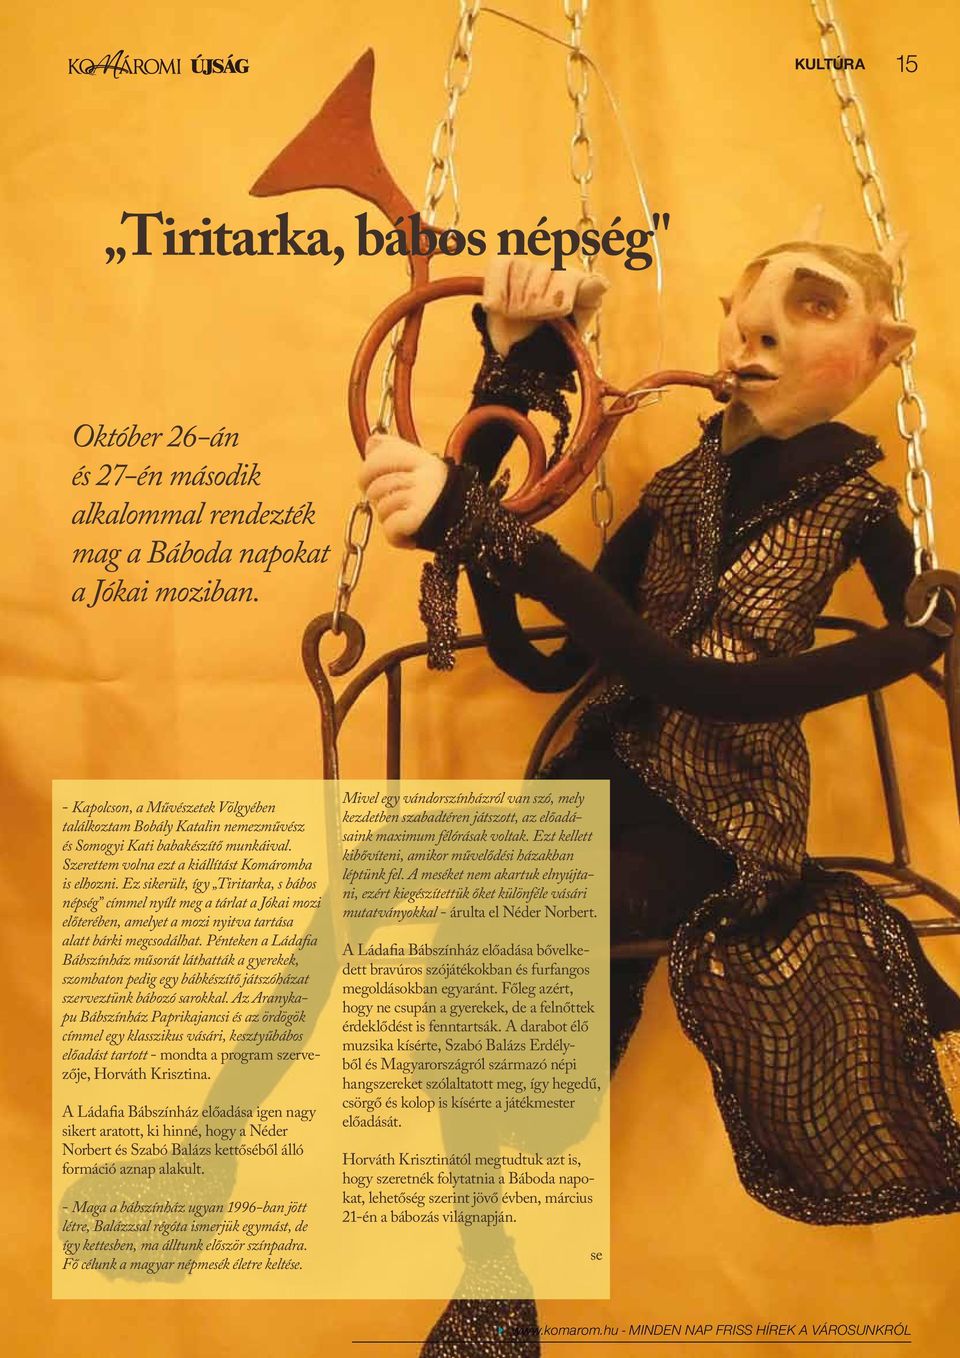 Ez sikerült, így Tiritarka, s bábos népség címmel nyílt meg a tárlat a Jókai mozi előterében, amelyet a mozi nyitva tartása alatt bárki megcsodálhat.